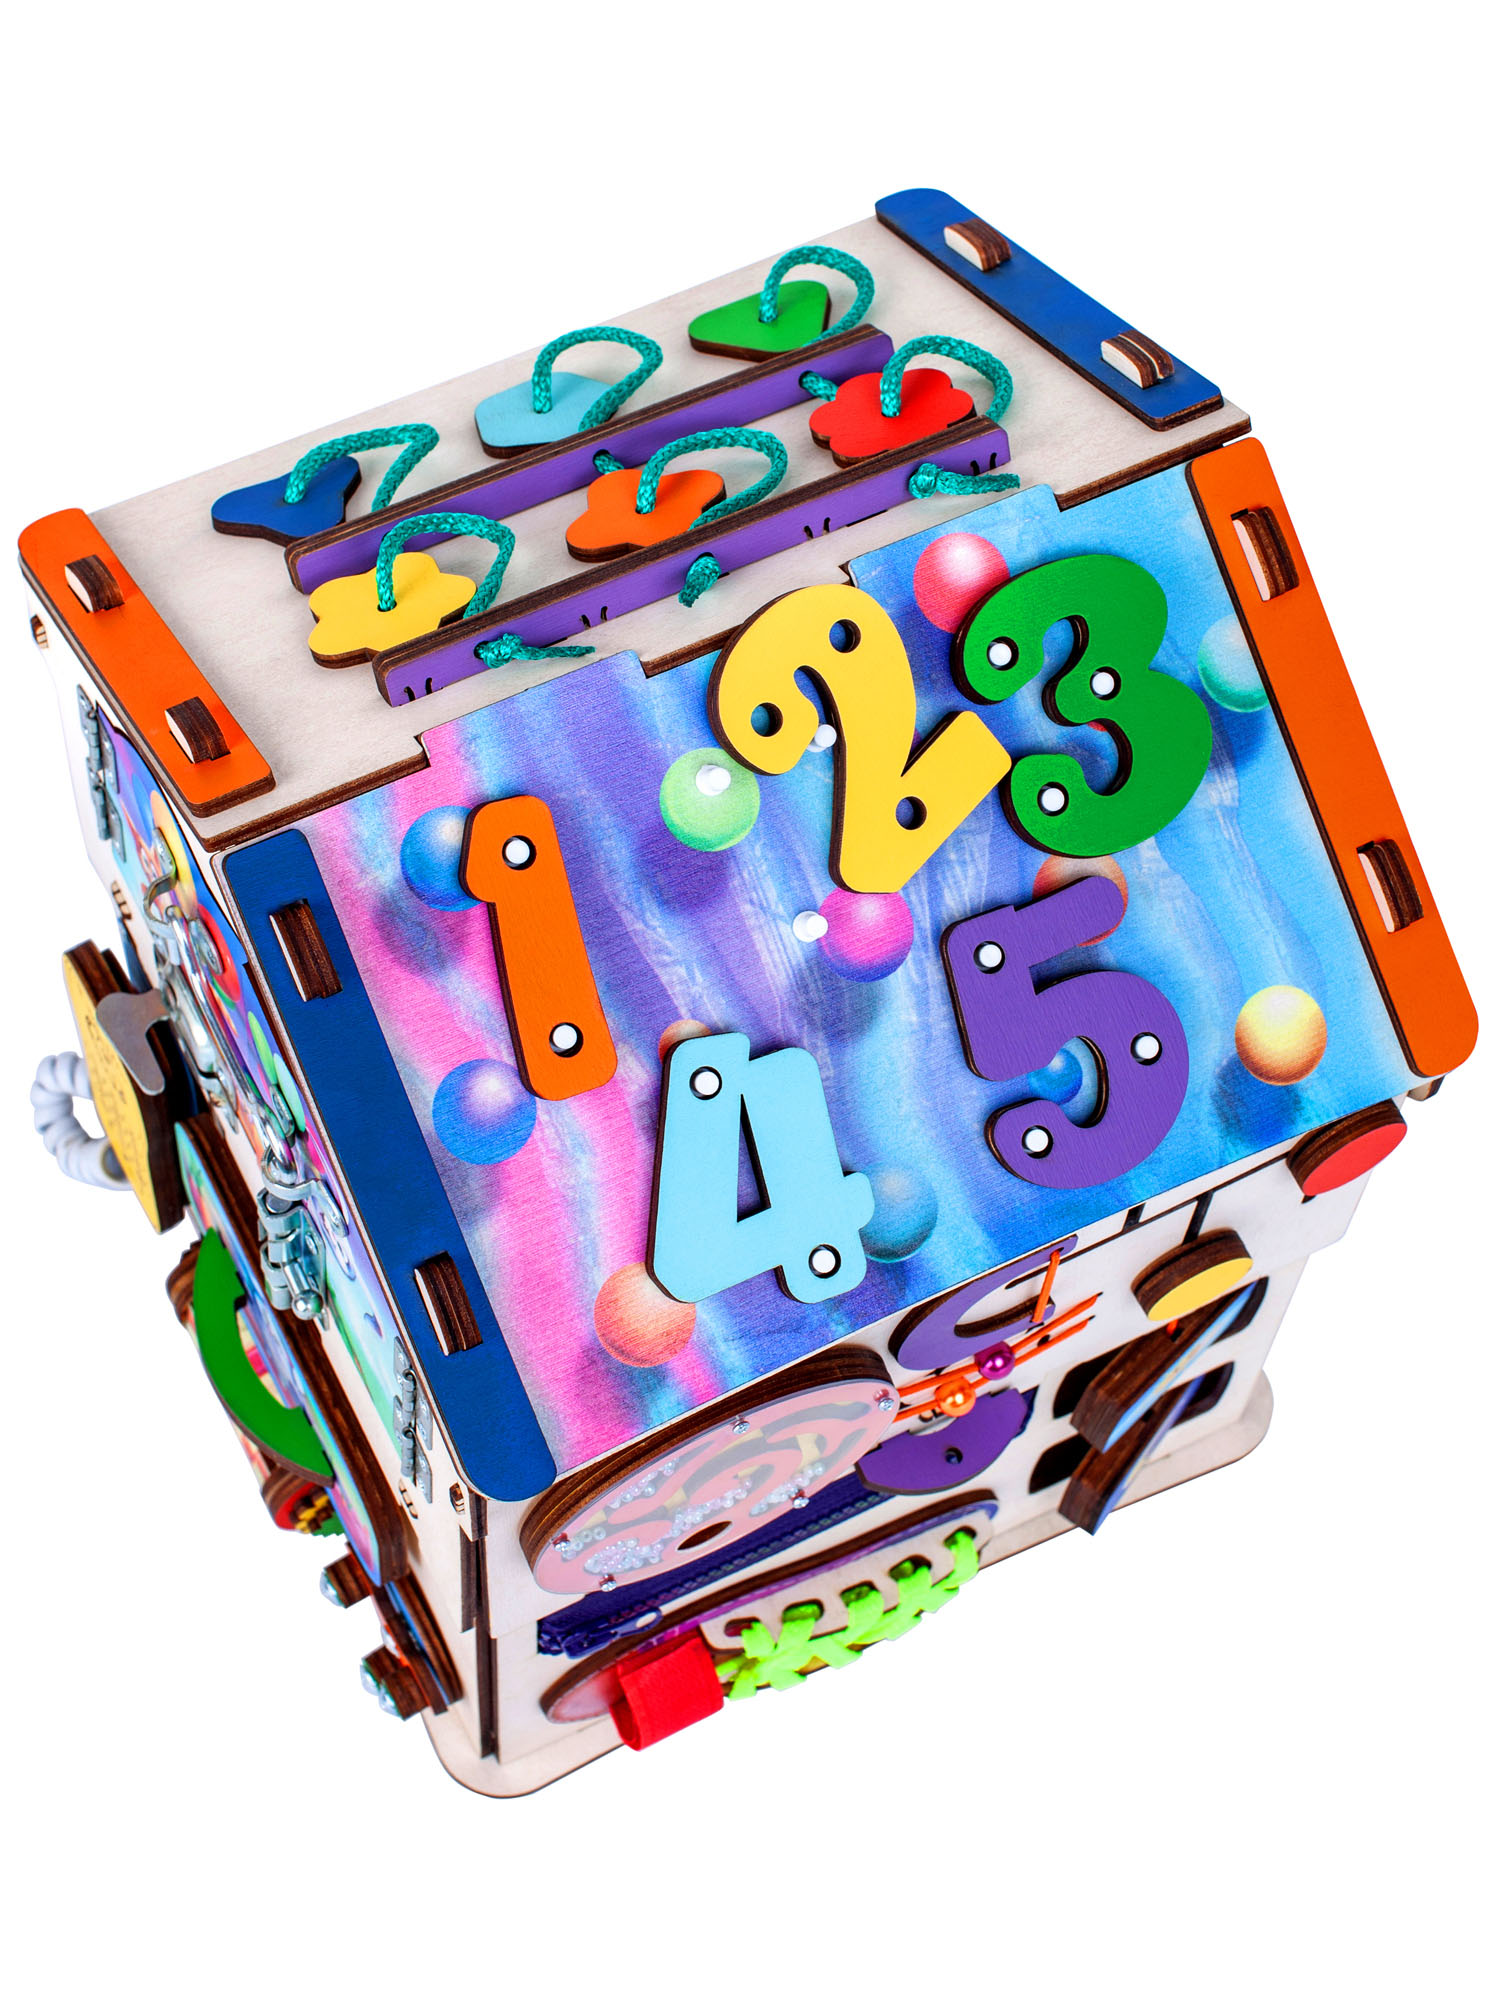 Бизиборд Jolly Kids развивающий бизидом и куб 2 в 1 со светом - фото 7